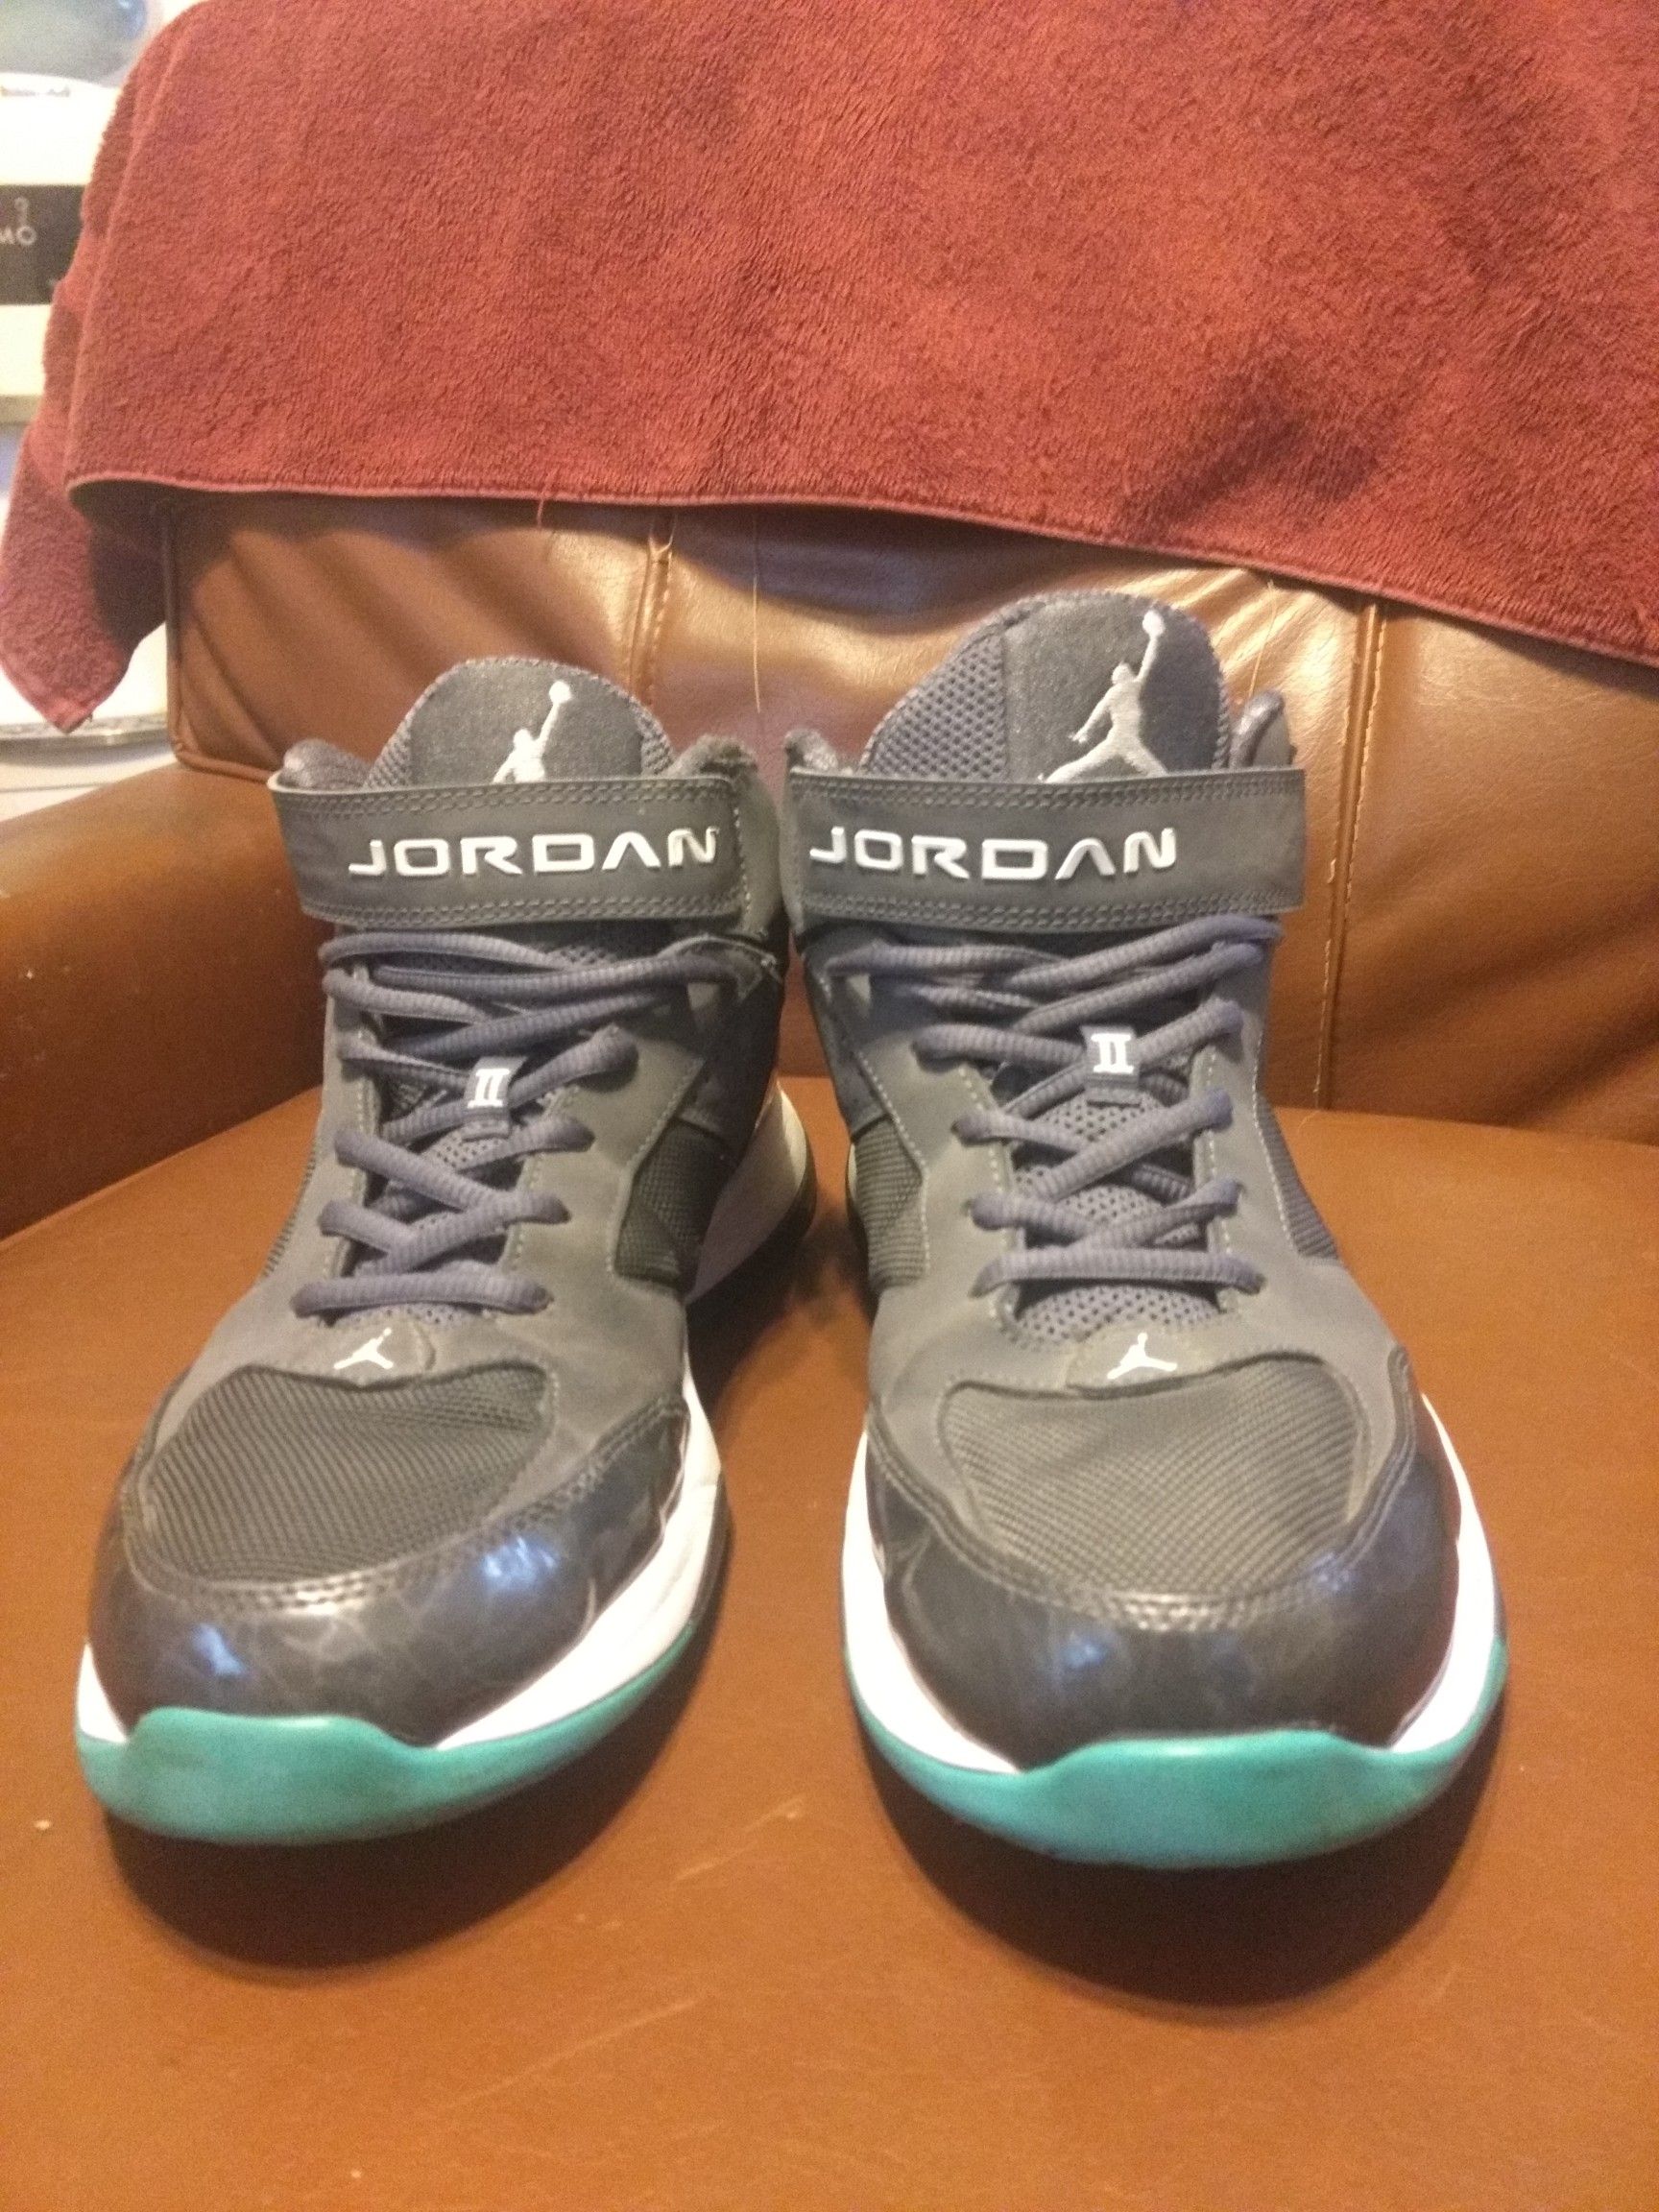 Jordan BCT Mid greyand turquoise size 10.5